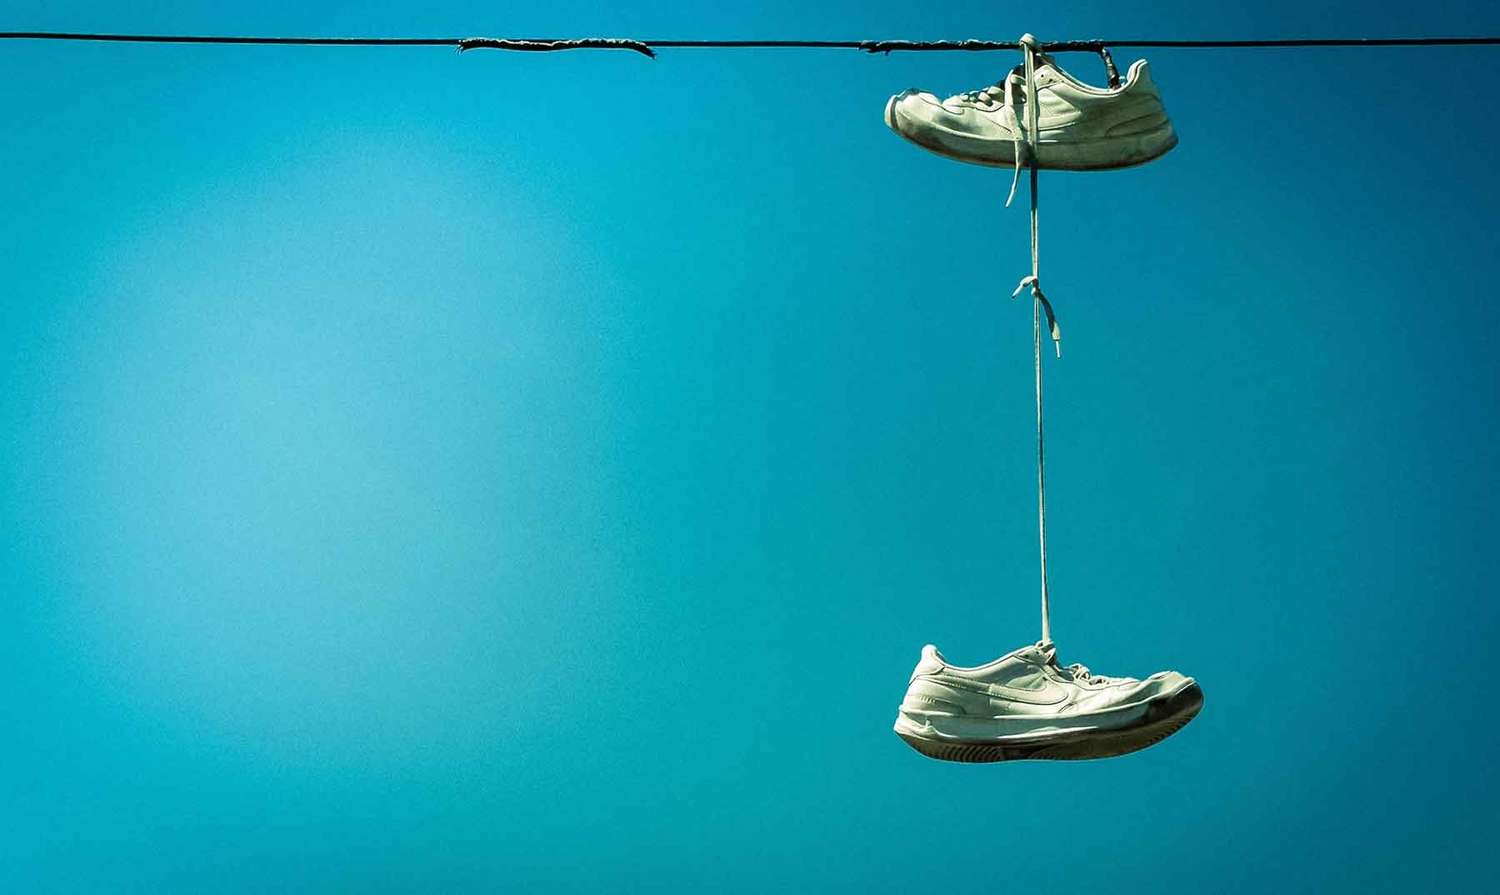 Zapatillas colgadas: Entre el misterio argentino y el arte callejero global